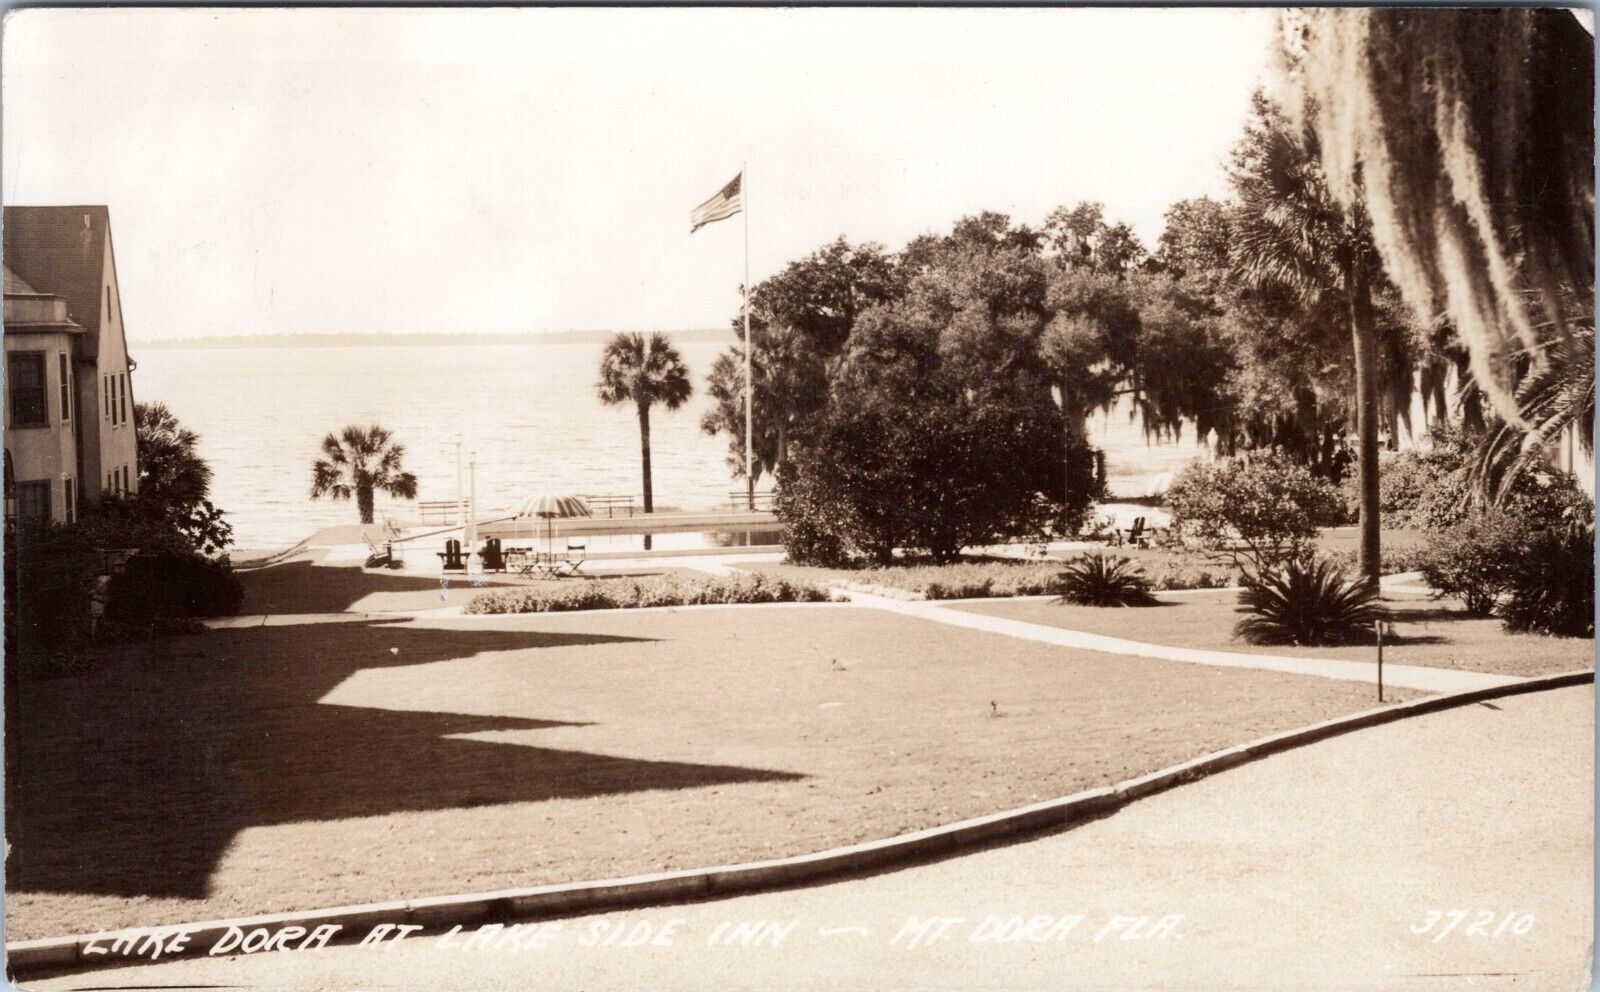 RPPC Lake Dora, Lakeside Inn, Mount Dora, Florida - c1930s Photo Postcard